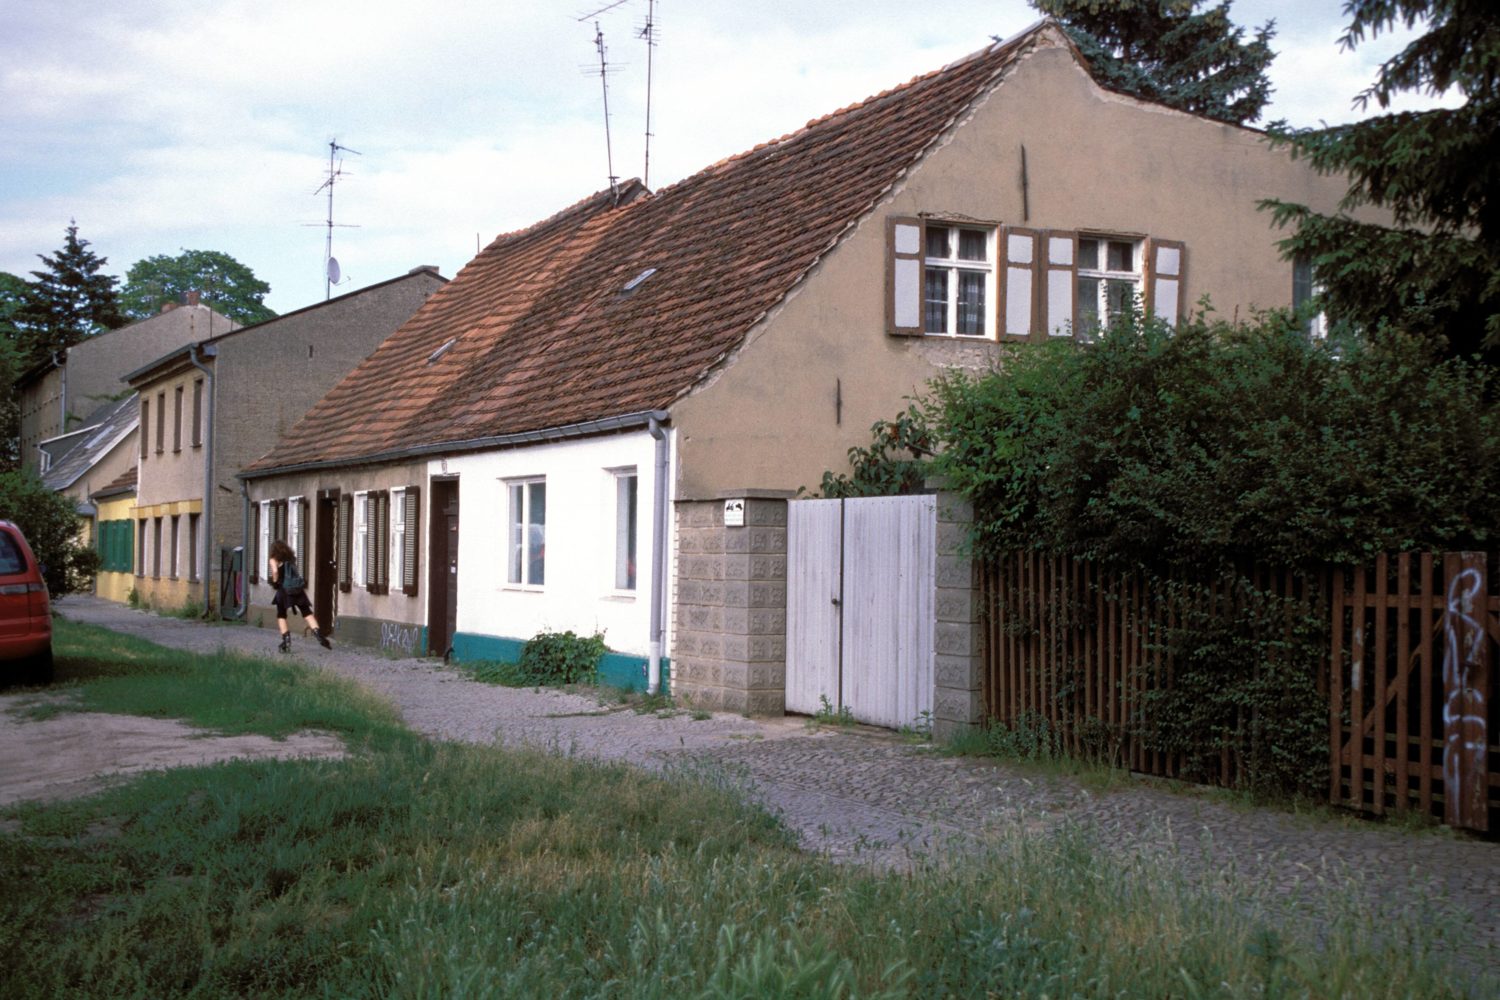 Potsdam in den 1990er-Jahren: Häuser im Norden von Potsdam, 1999. Foto: Imago/Hanke